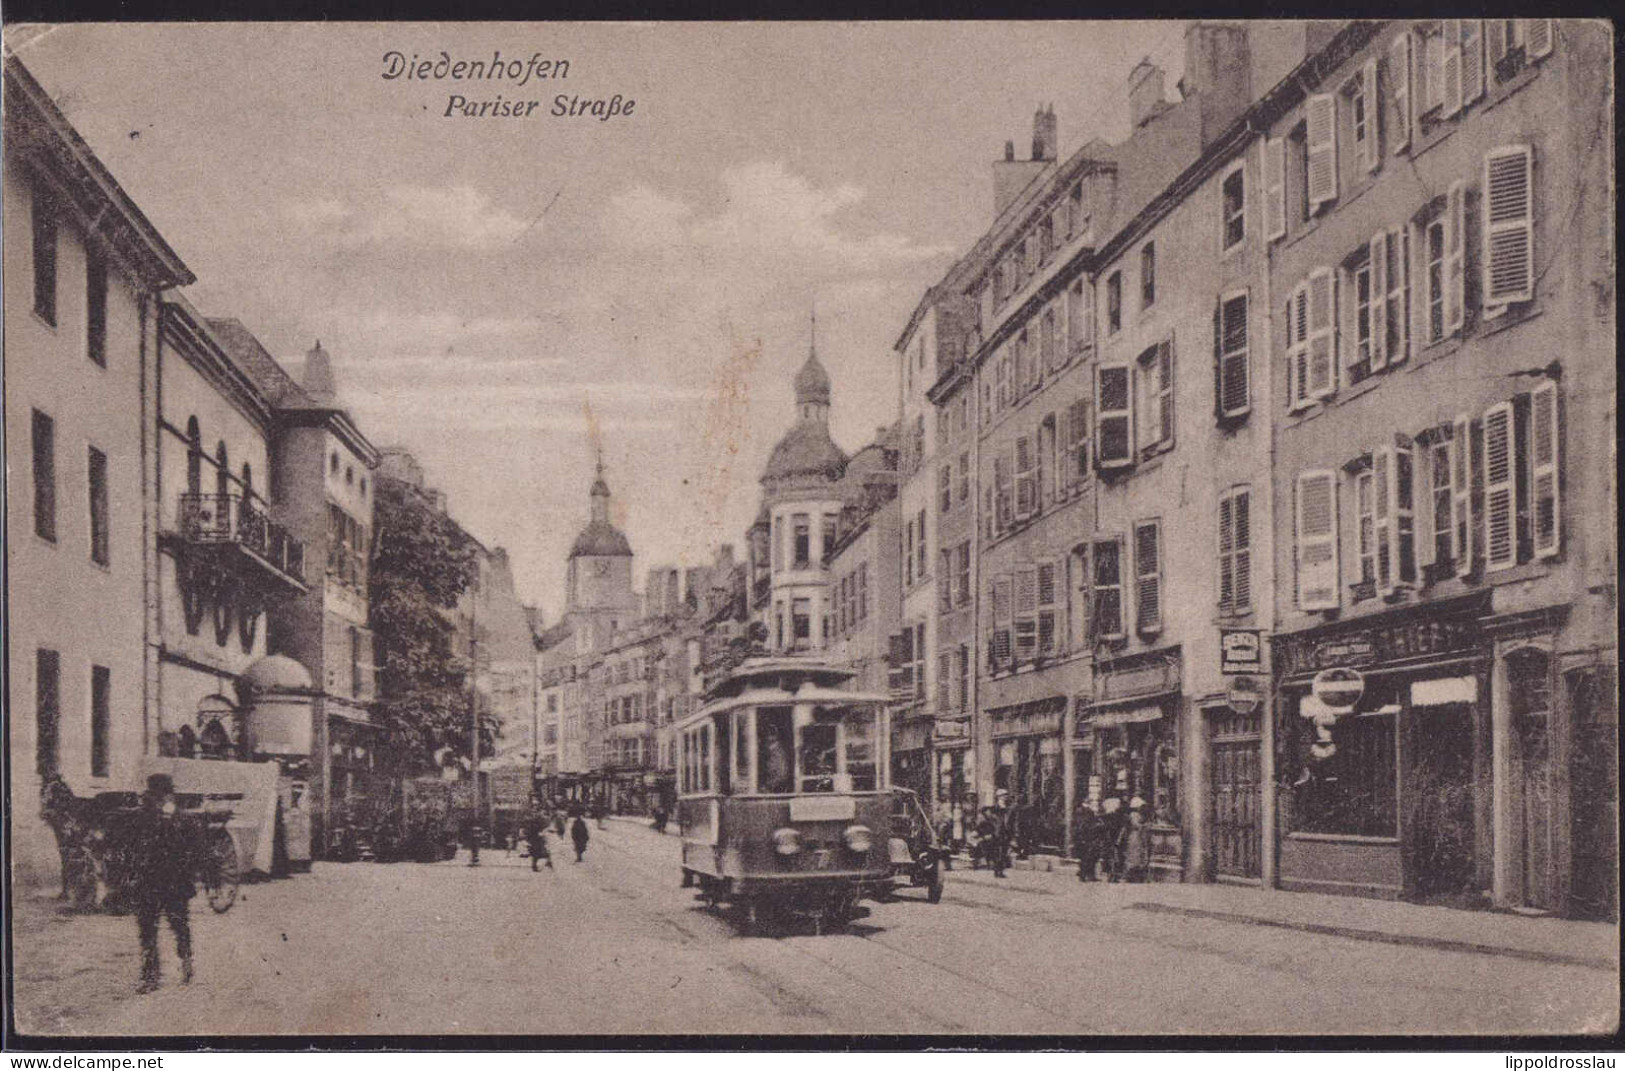 Gest. Diedenhofen Pariser Straße, Feldpost 1916 - Lothringen